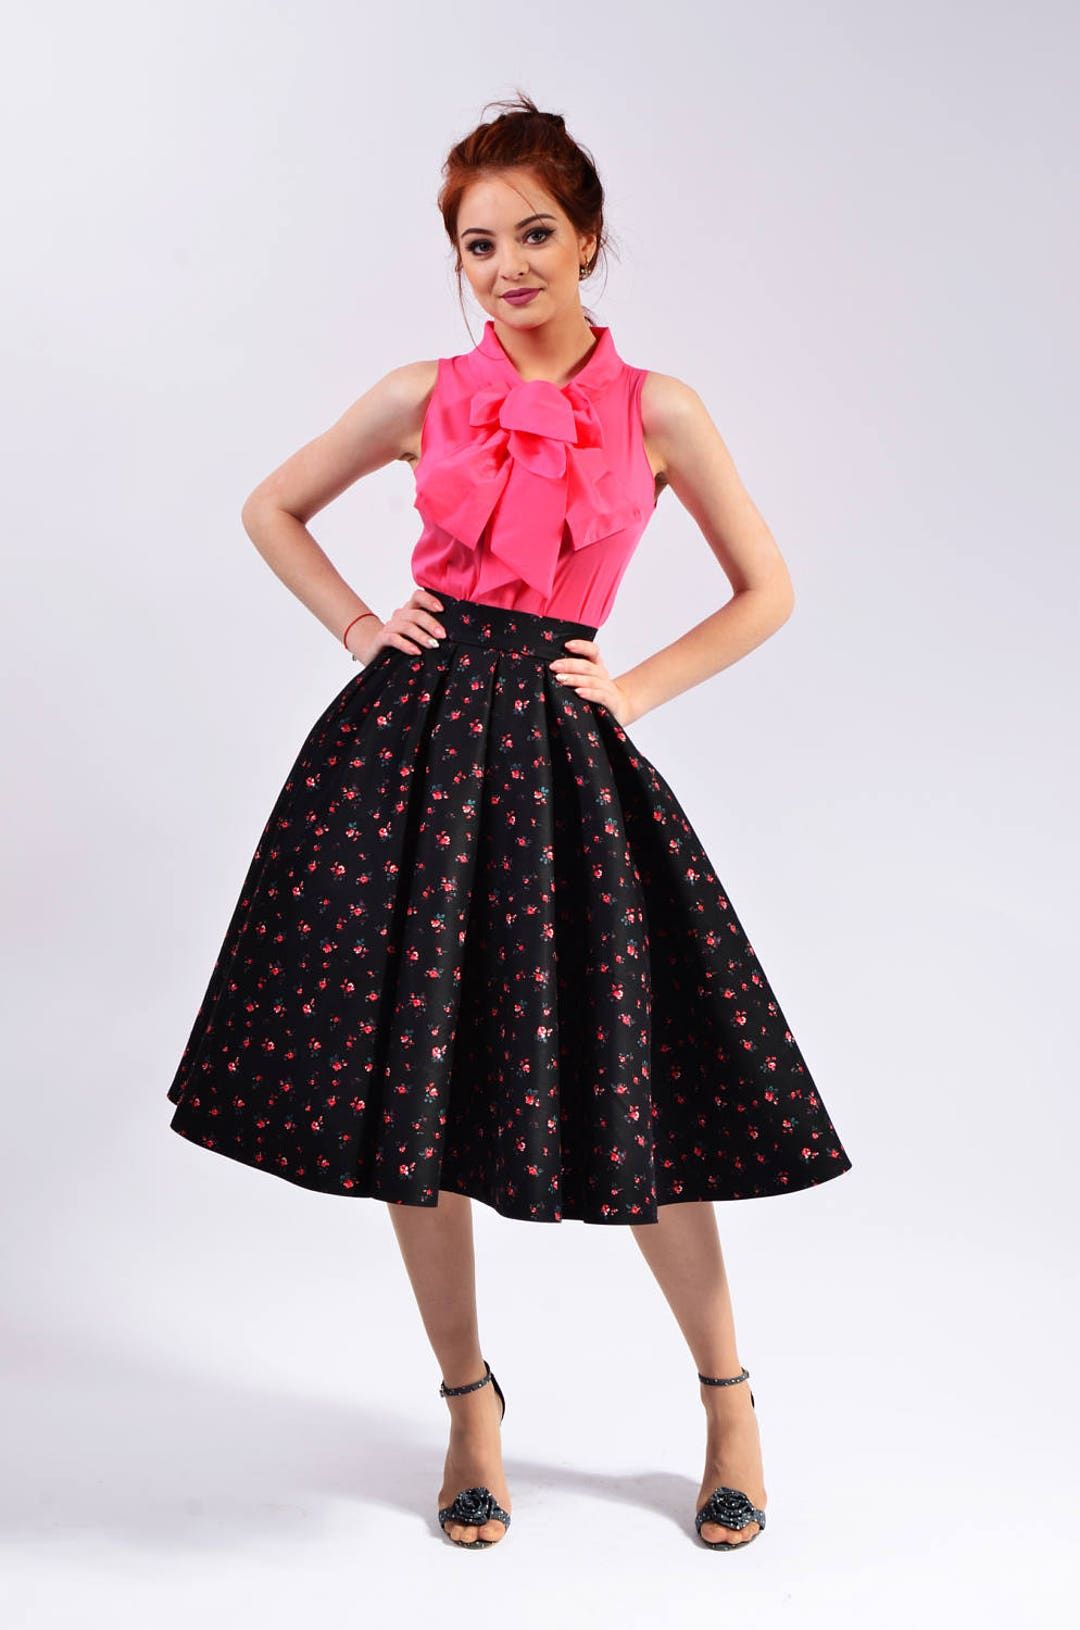 Midi Skirt A-line Pleated Knee Length for Women Elegant - Etsy